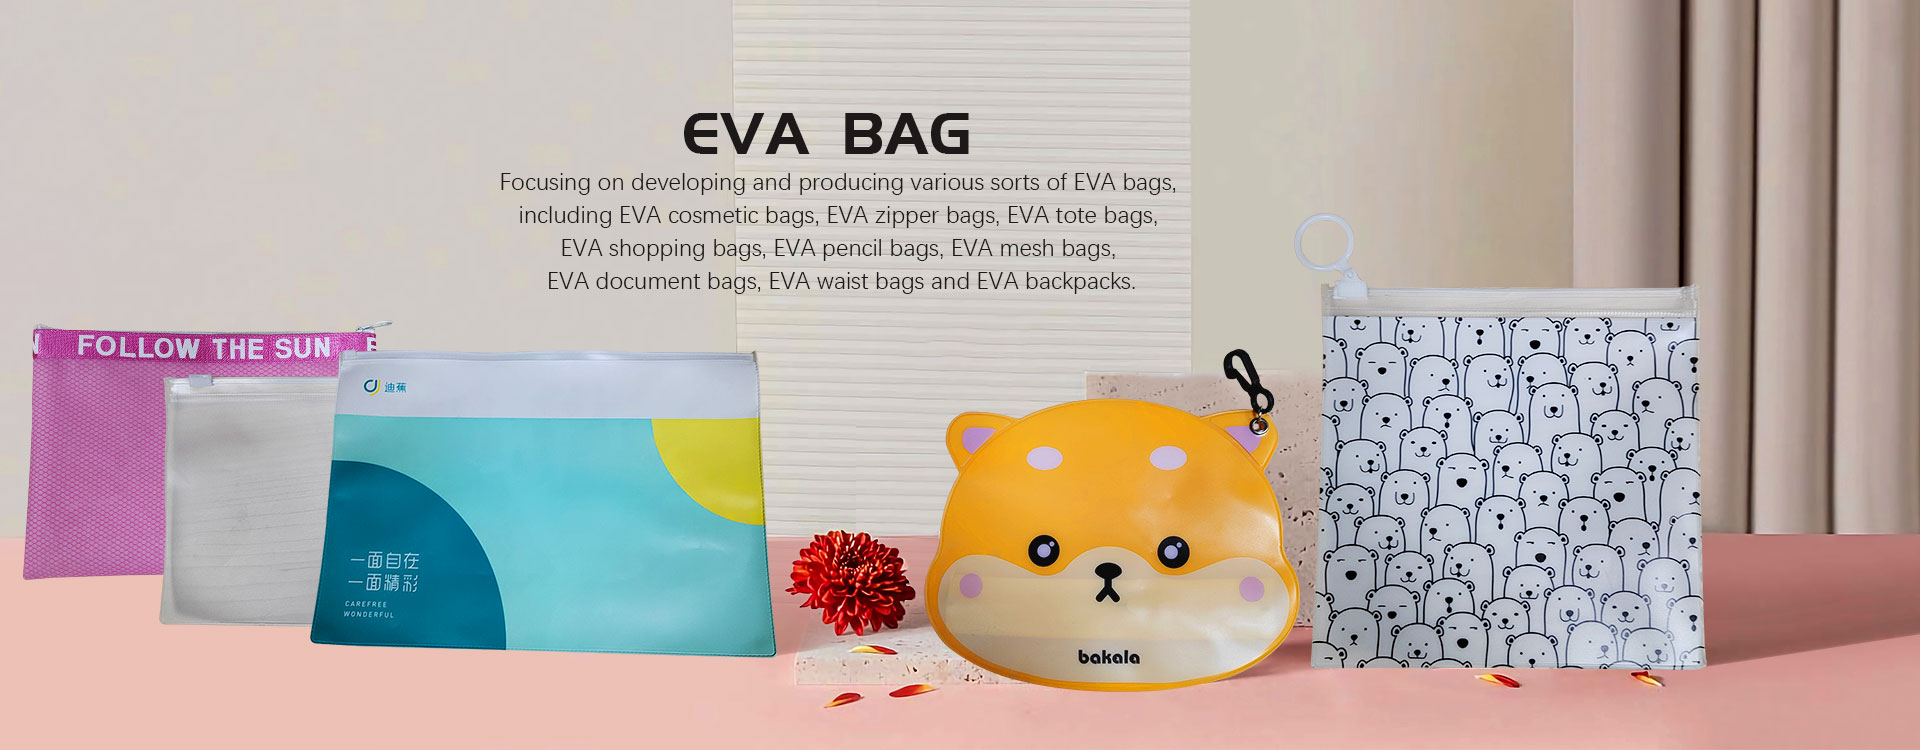 I-EVA Bag Factory